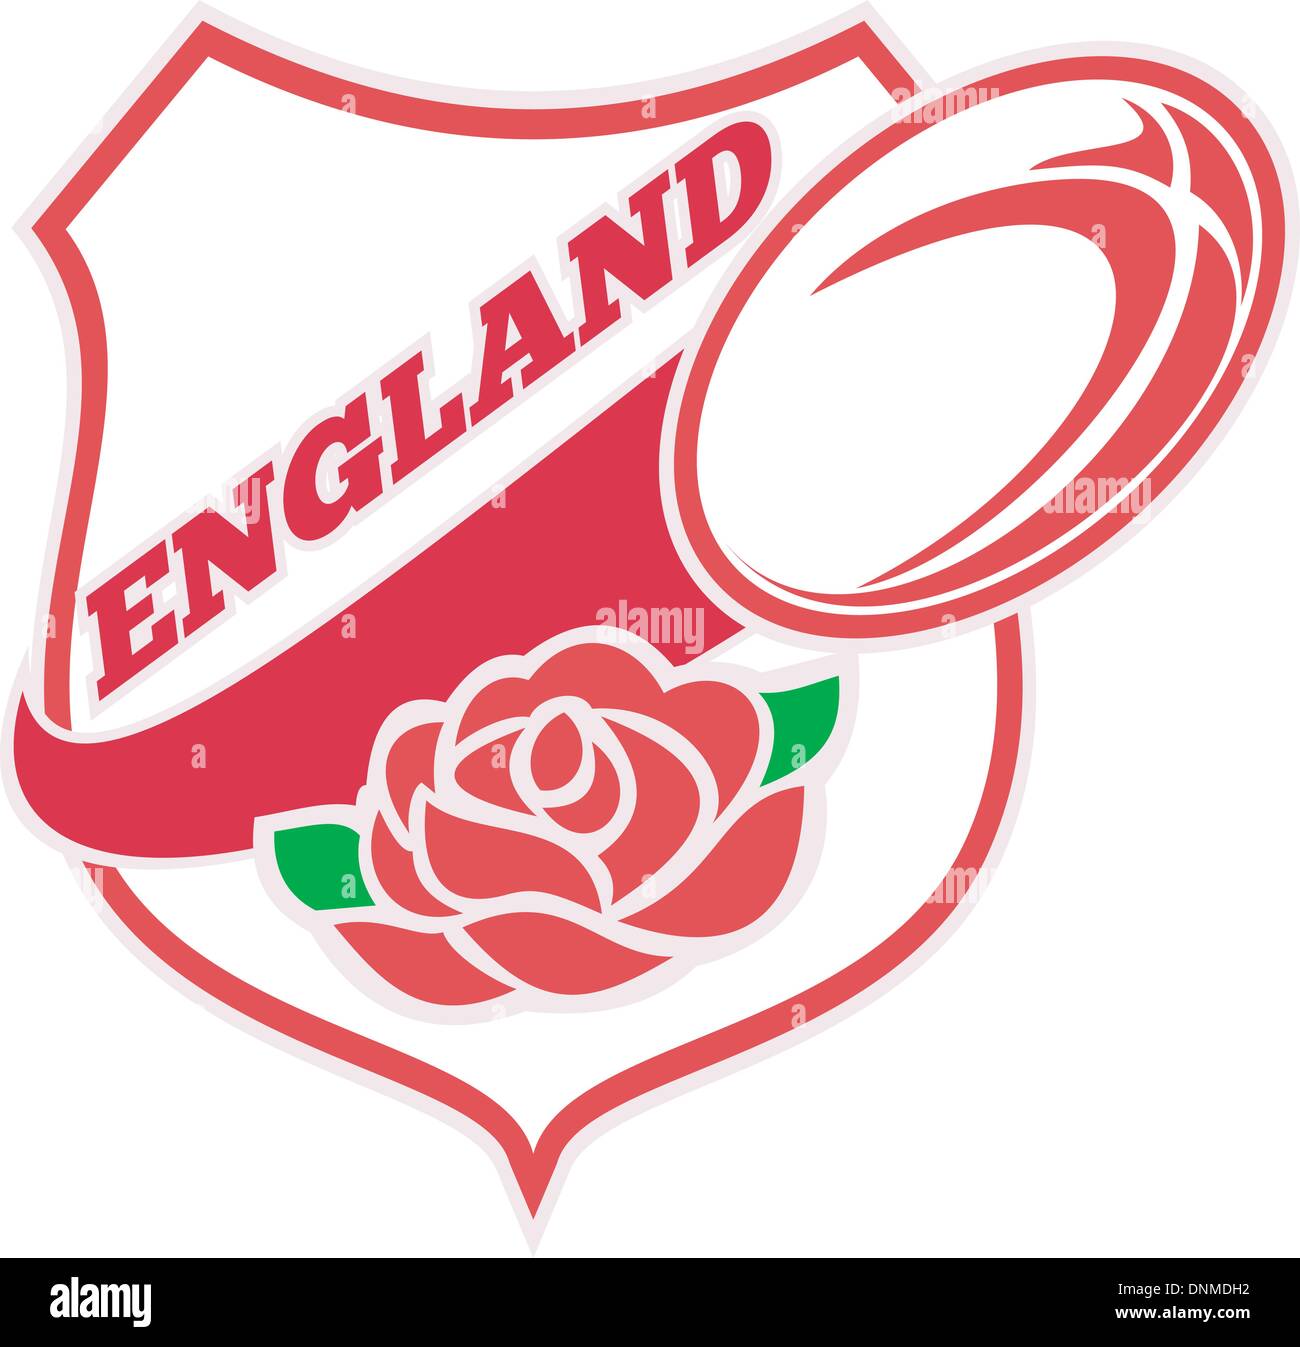 Abbildung einer roten englischen Rose in Schild mit Rugby-Ball fliegen aus und Worte "England" Stock Vektor